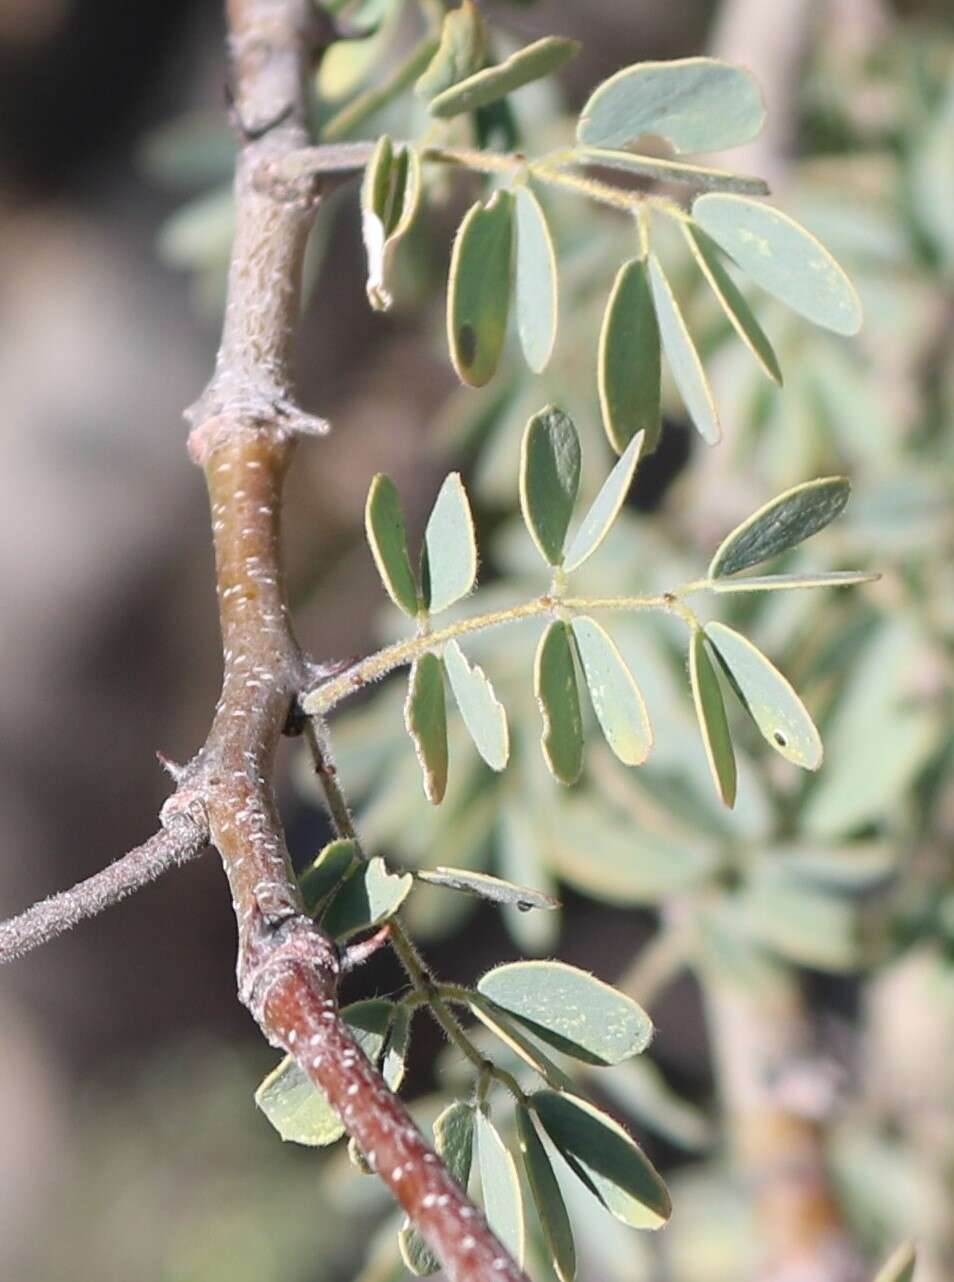 Sivun Senegalia mellifera subsp. detinens (Burch.) Kyal. & Boatwr. kuva